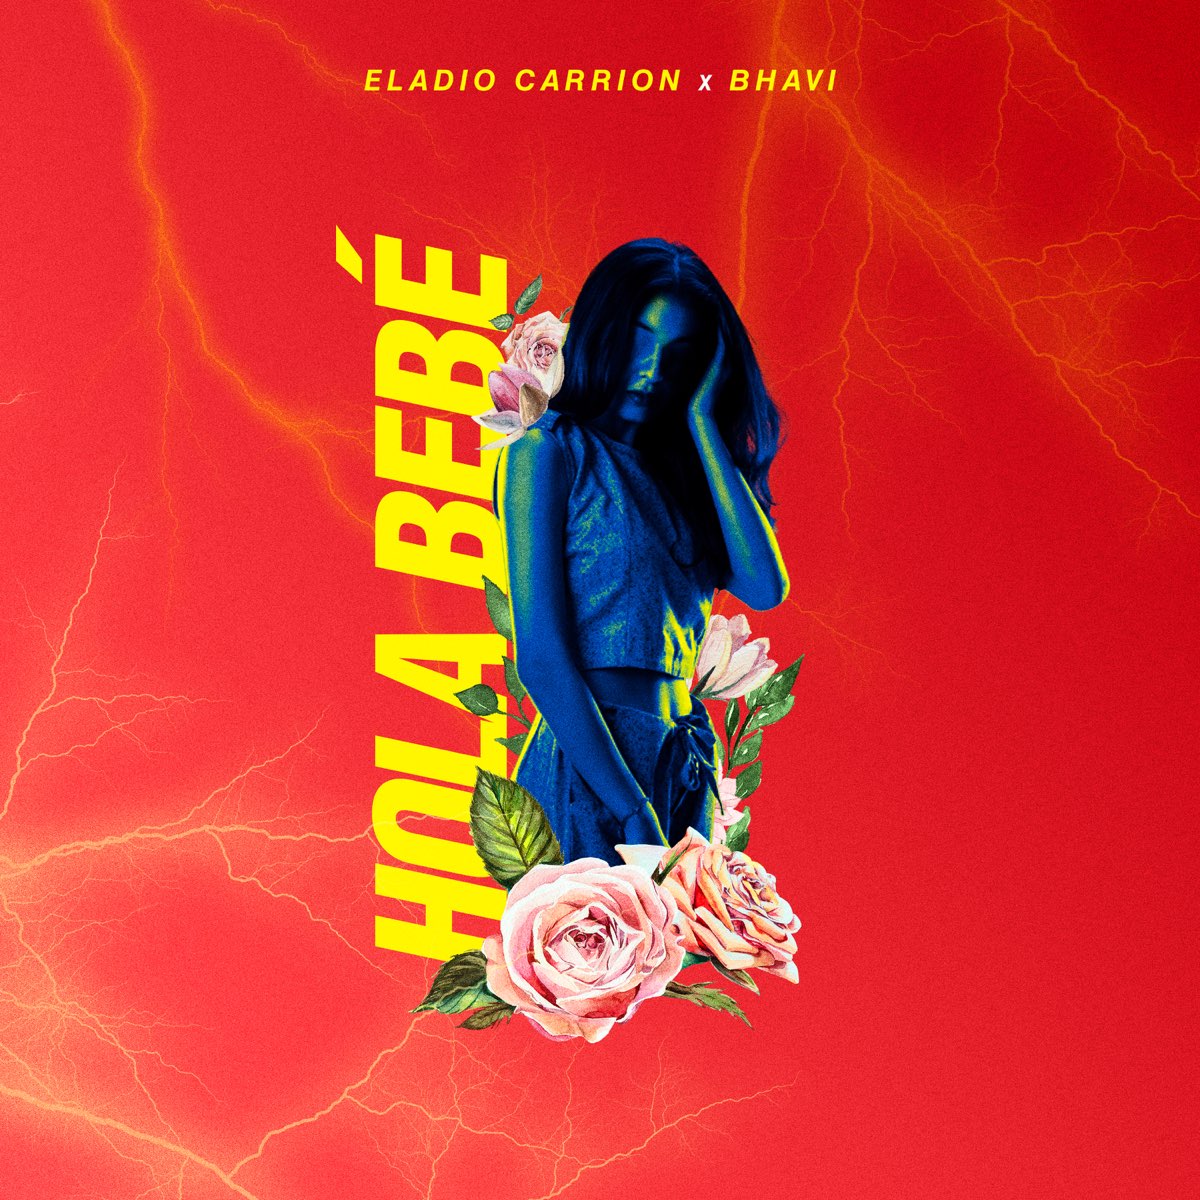 Hola Bebé - Single de Eladio Carrión & Bhavi en Apple Music